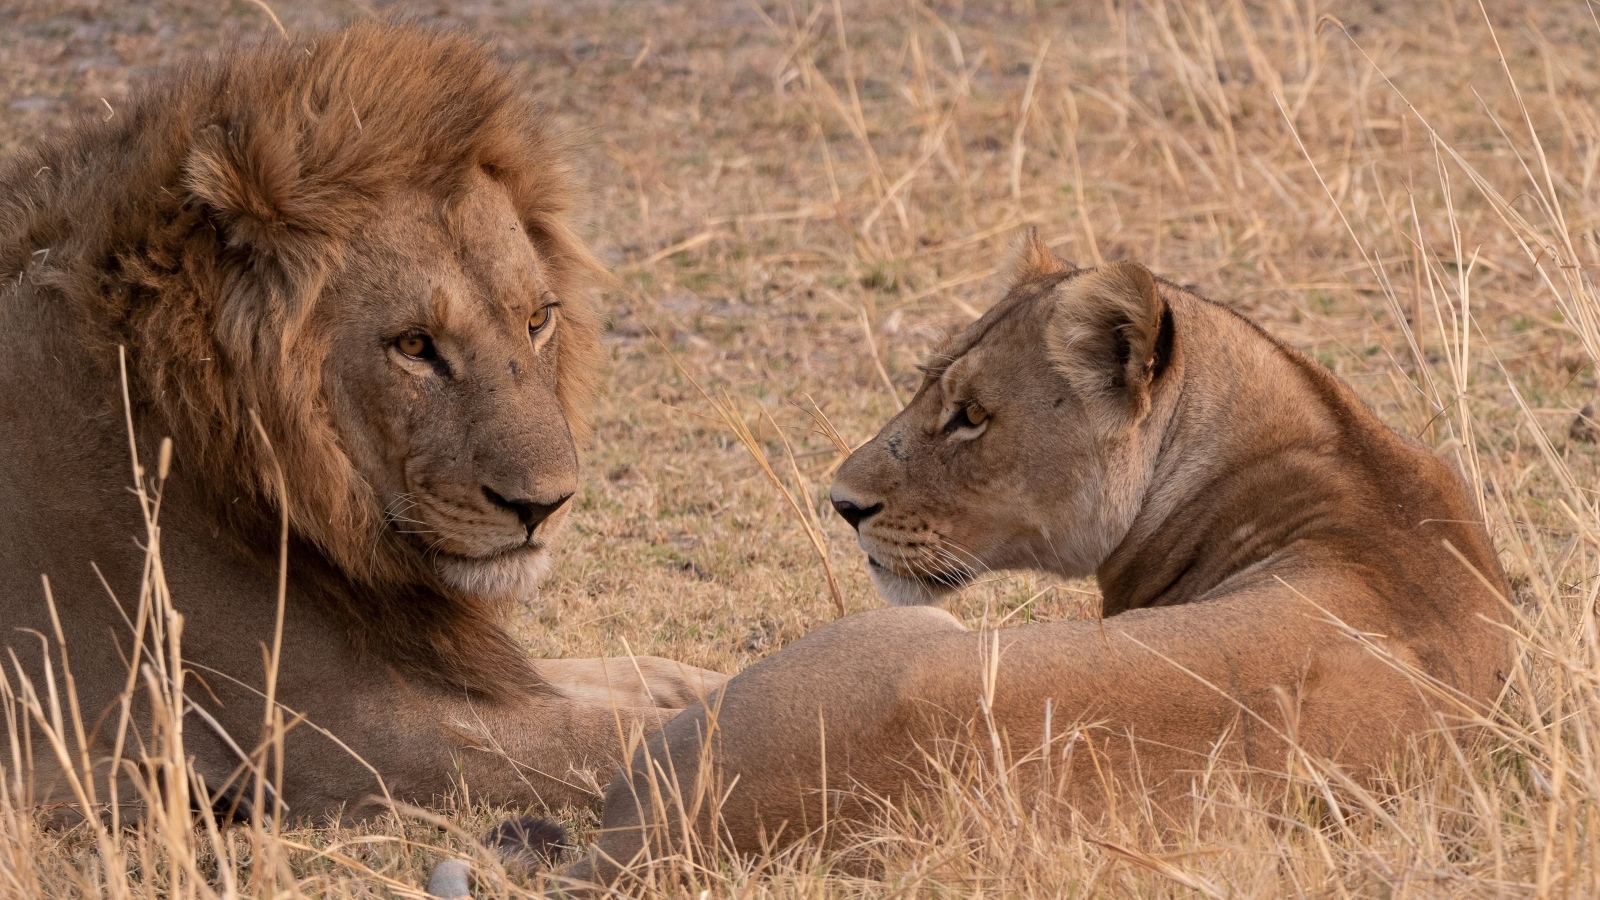 Грациозные лев и львица лежат на сухой траве